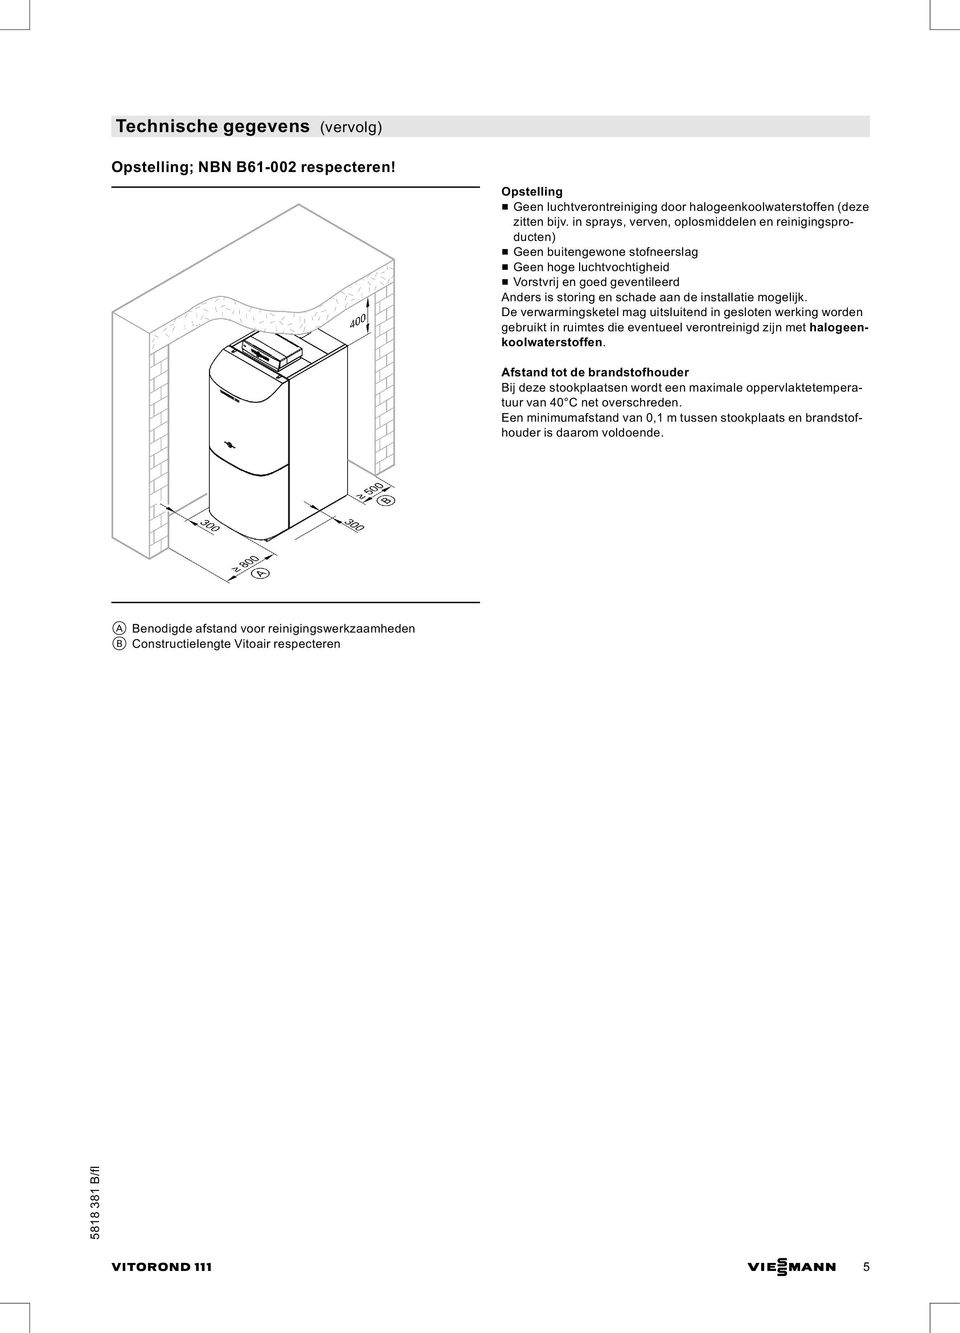 mogelijk. De verwarmingsketel mag uitsluitend in gesloten werking worden gebruikt in ruimtes die eventueel verontreinigd zijn met halogeenkoolwaterstoffen.